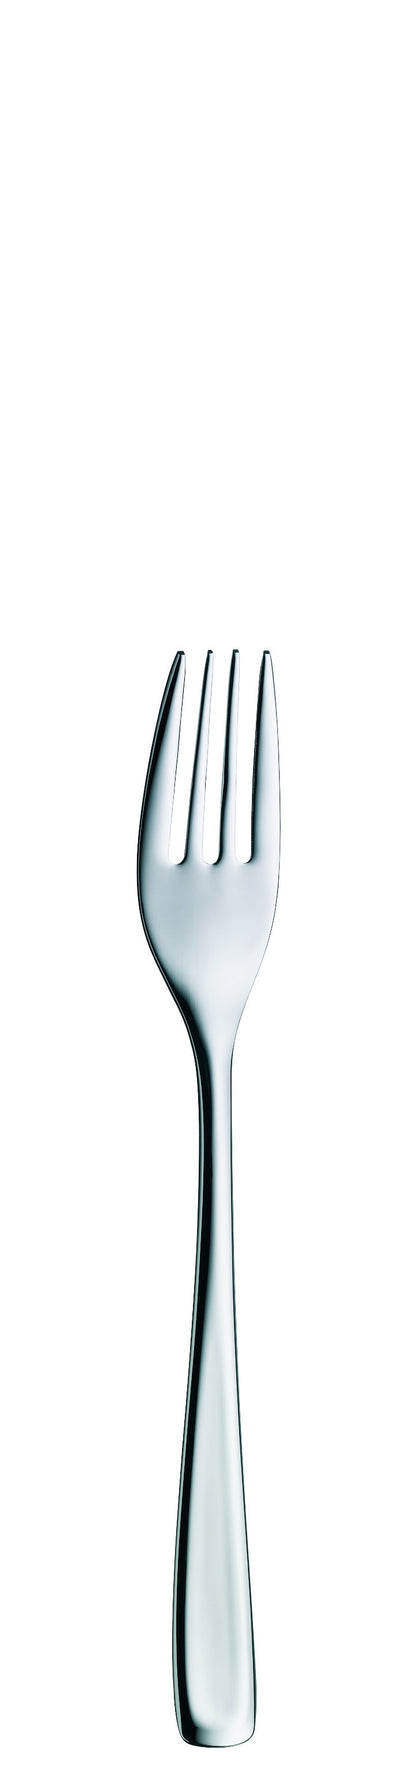 Dessert fork 4 prongs MEDAN 159mm